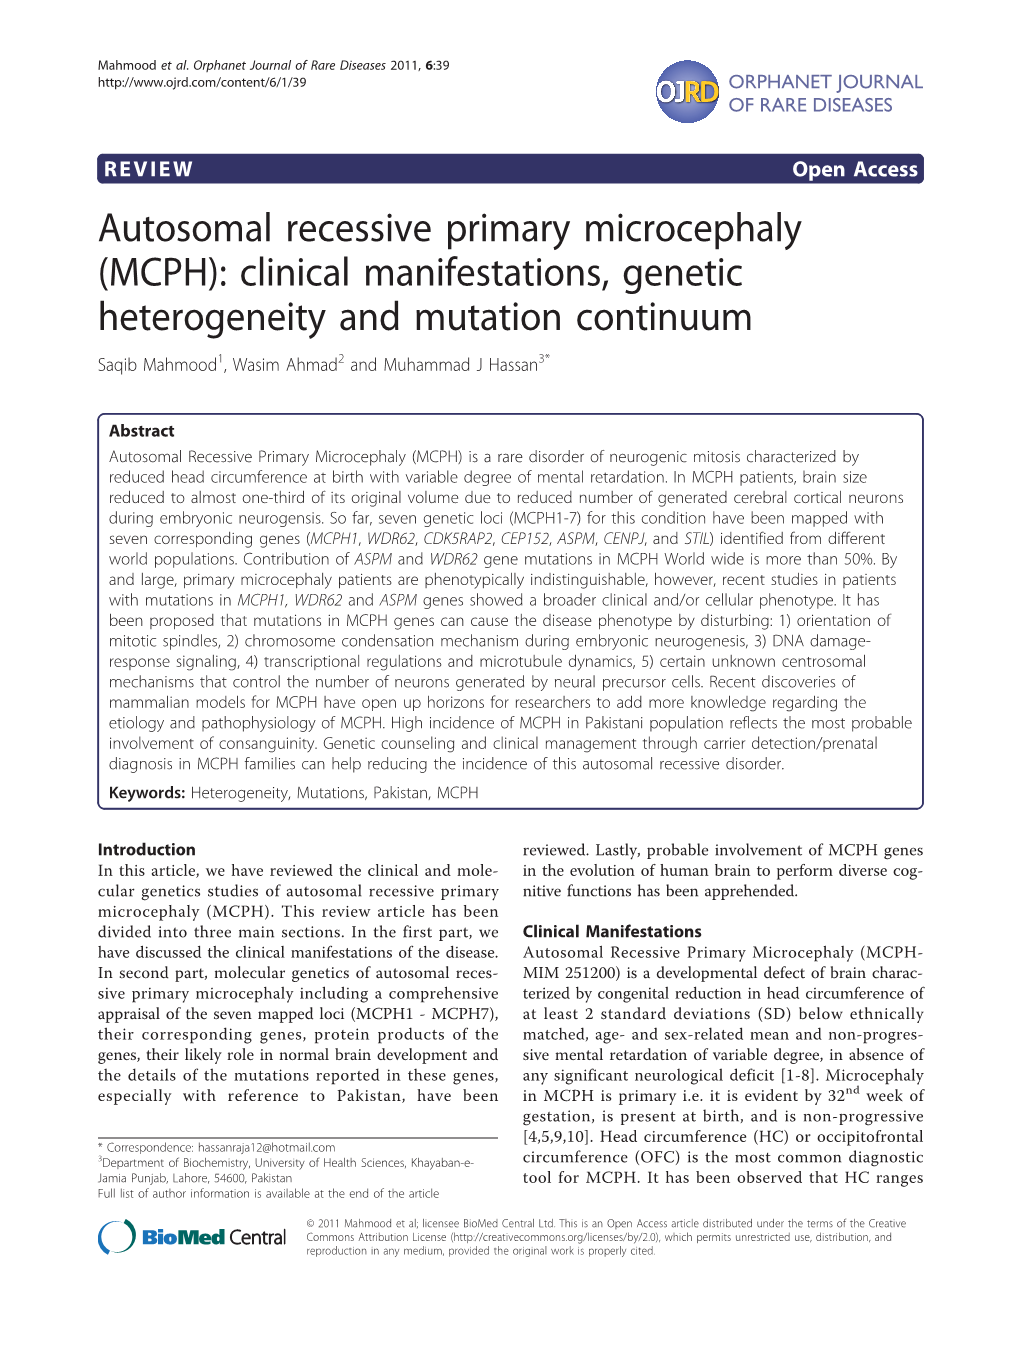 Autosomal Recessive Primary Microcephaly